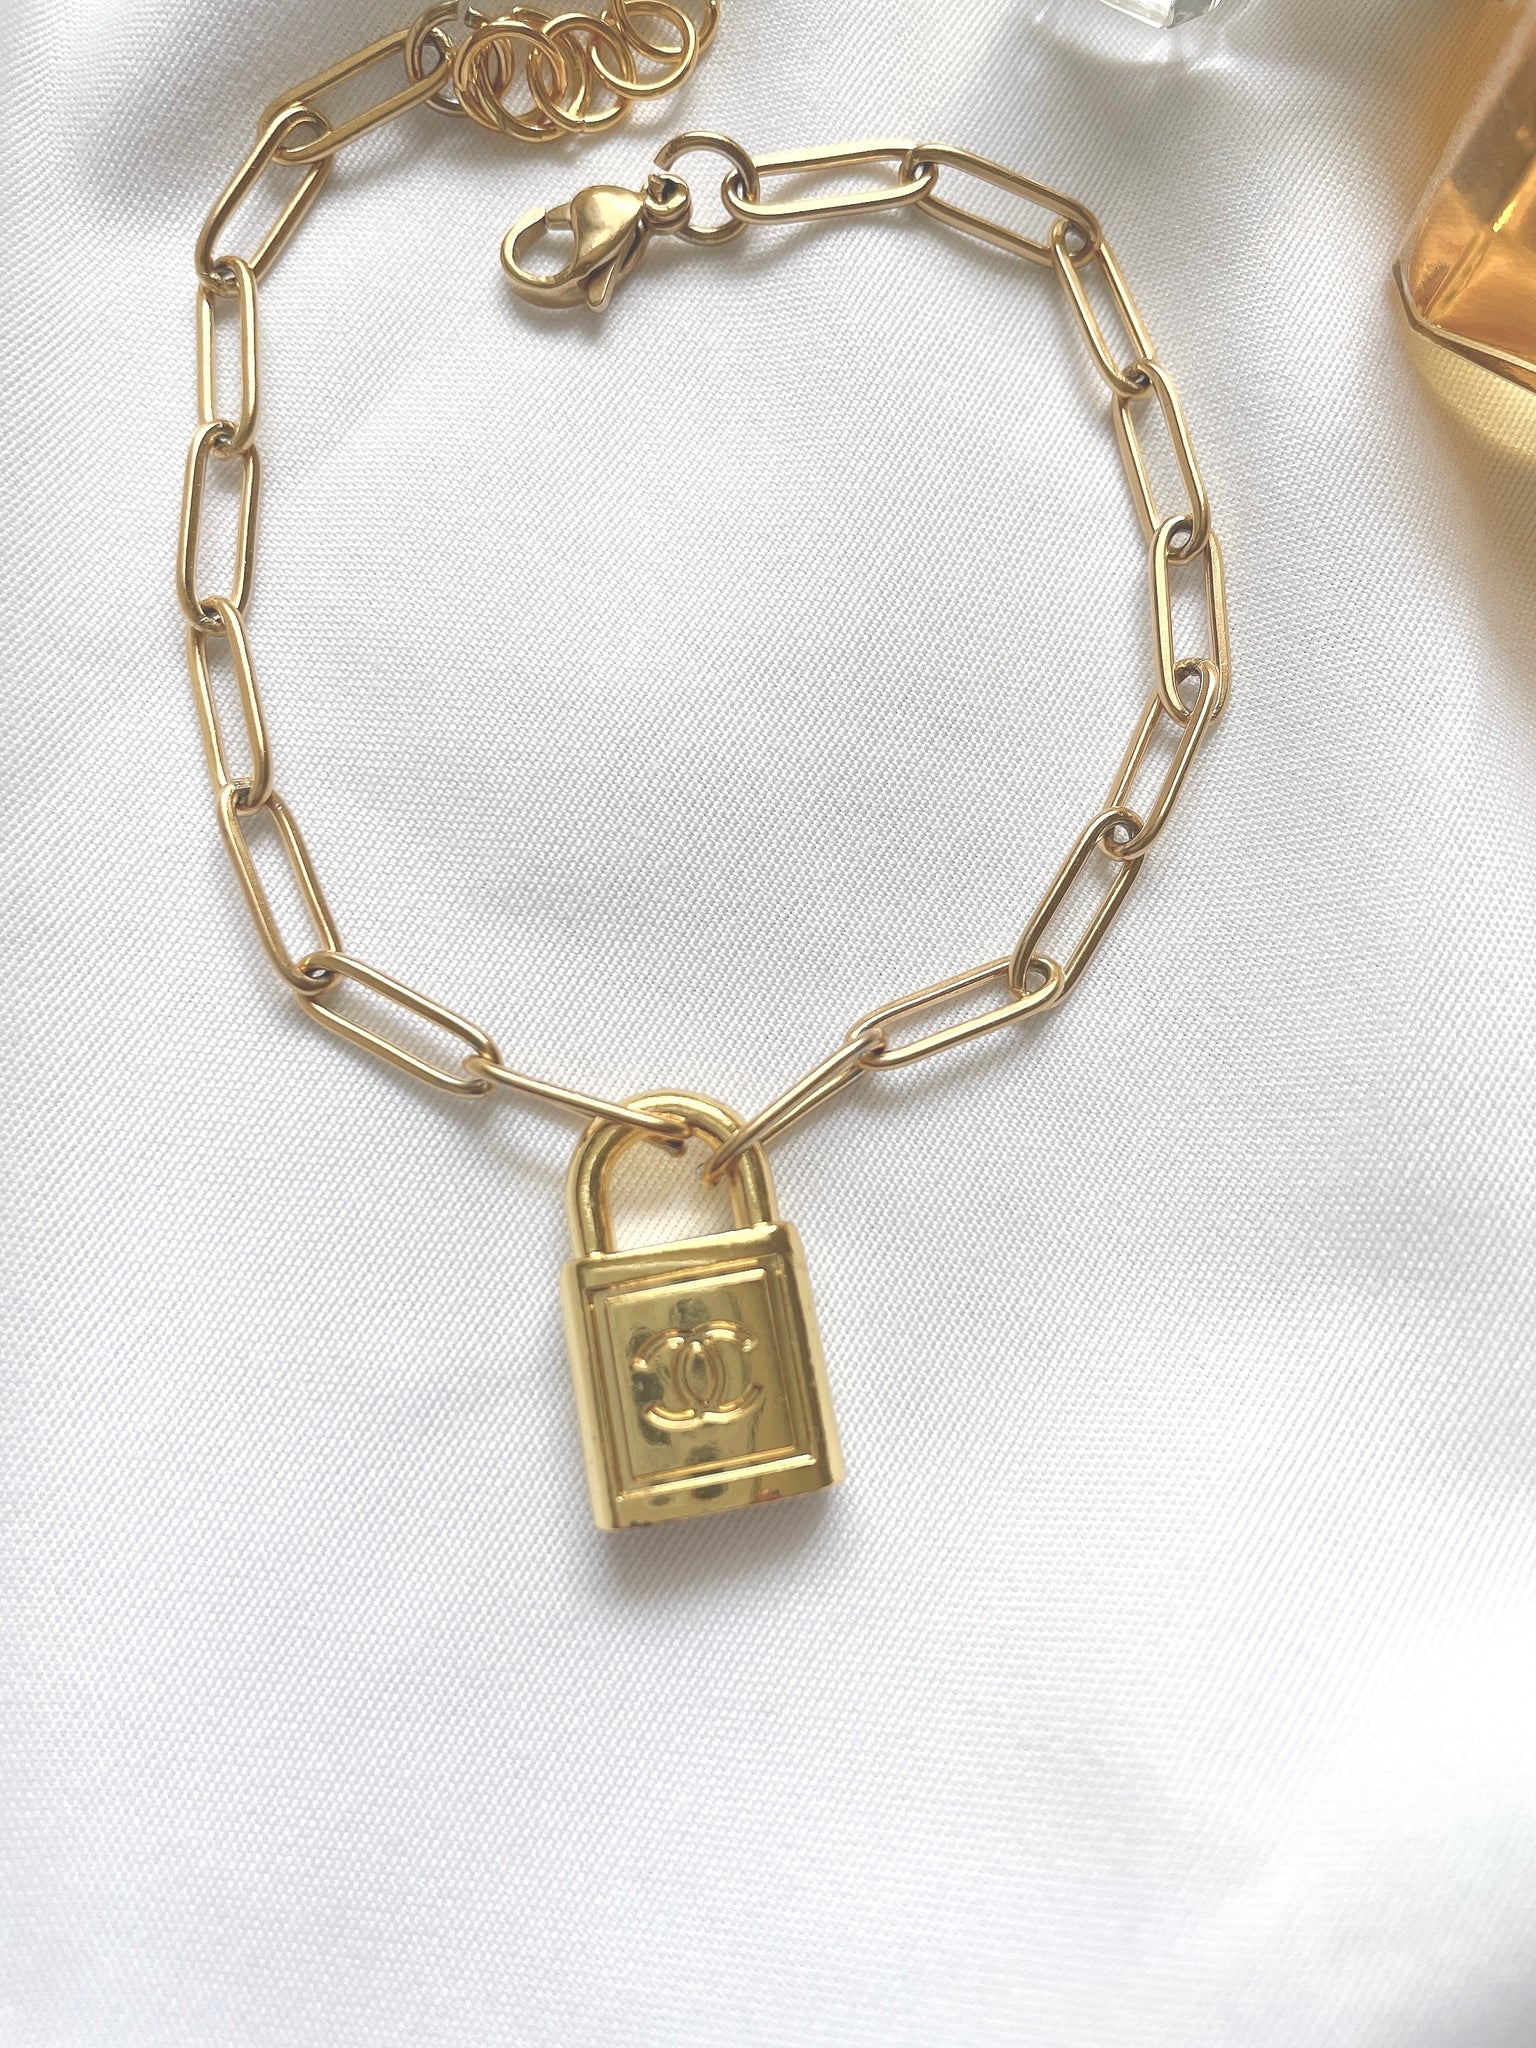 Repurposed Authentic Designer Lock Zipper Pull Gold Plated